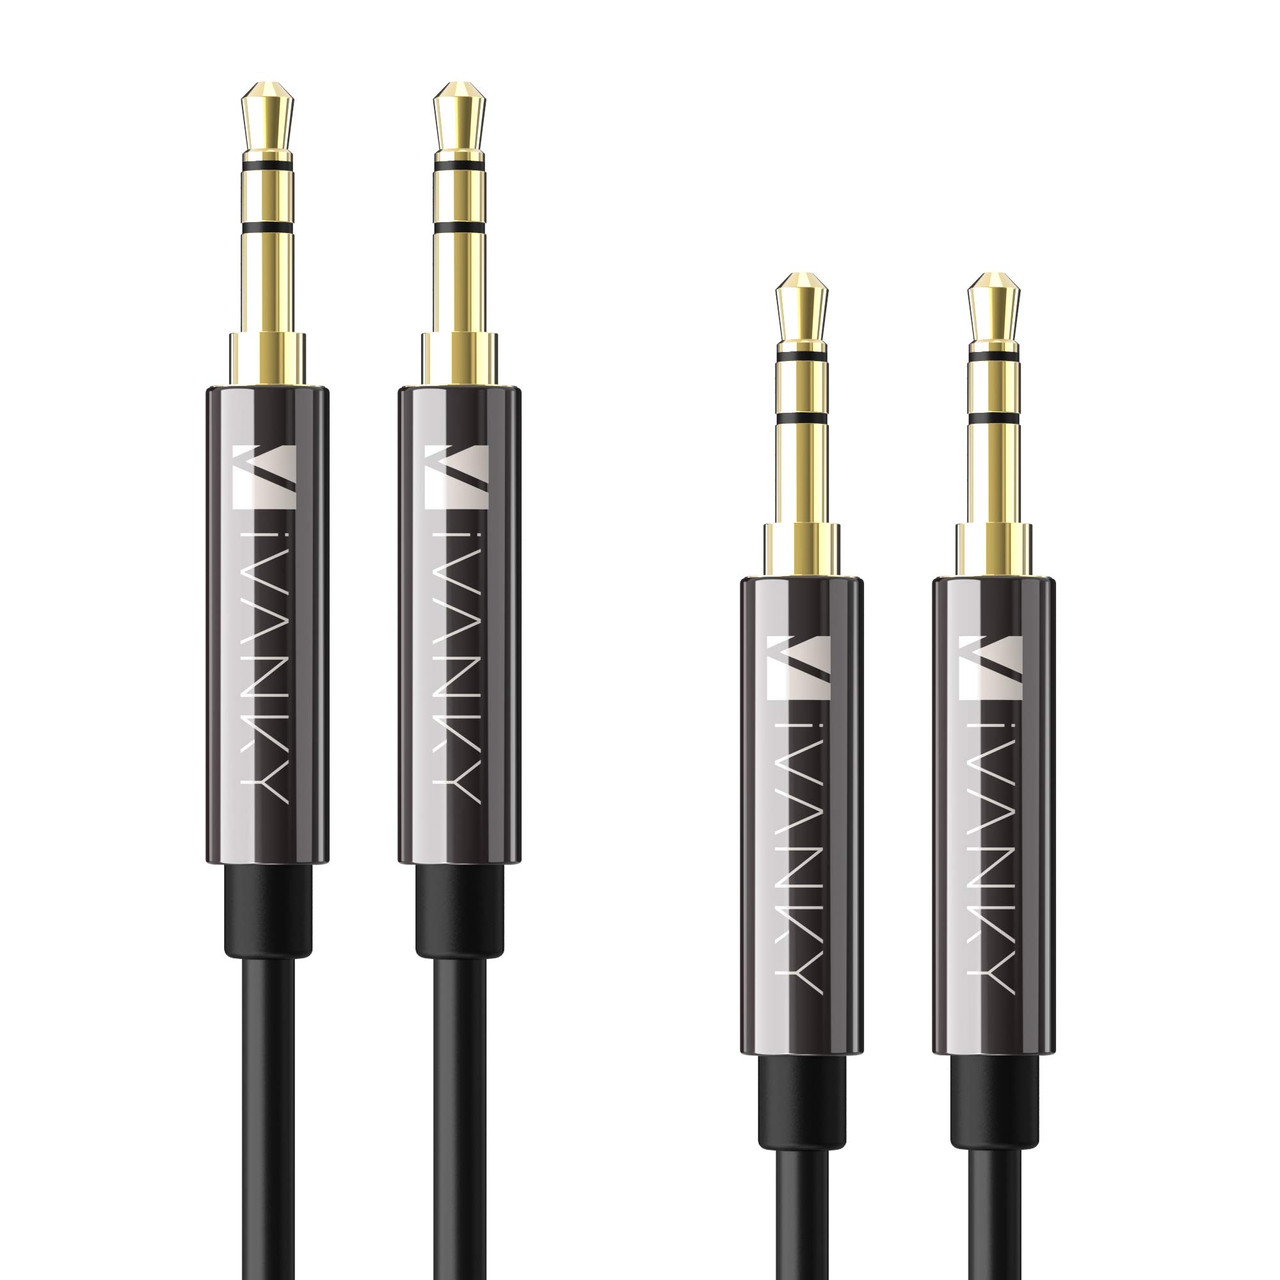 IVANKY Aux Cable 4ft [Hi-Fi Sound, 2-Pack], 3,5-міліметровий допоміжний аудіокабель